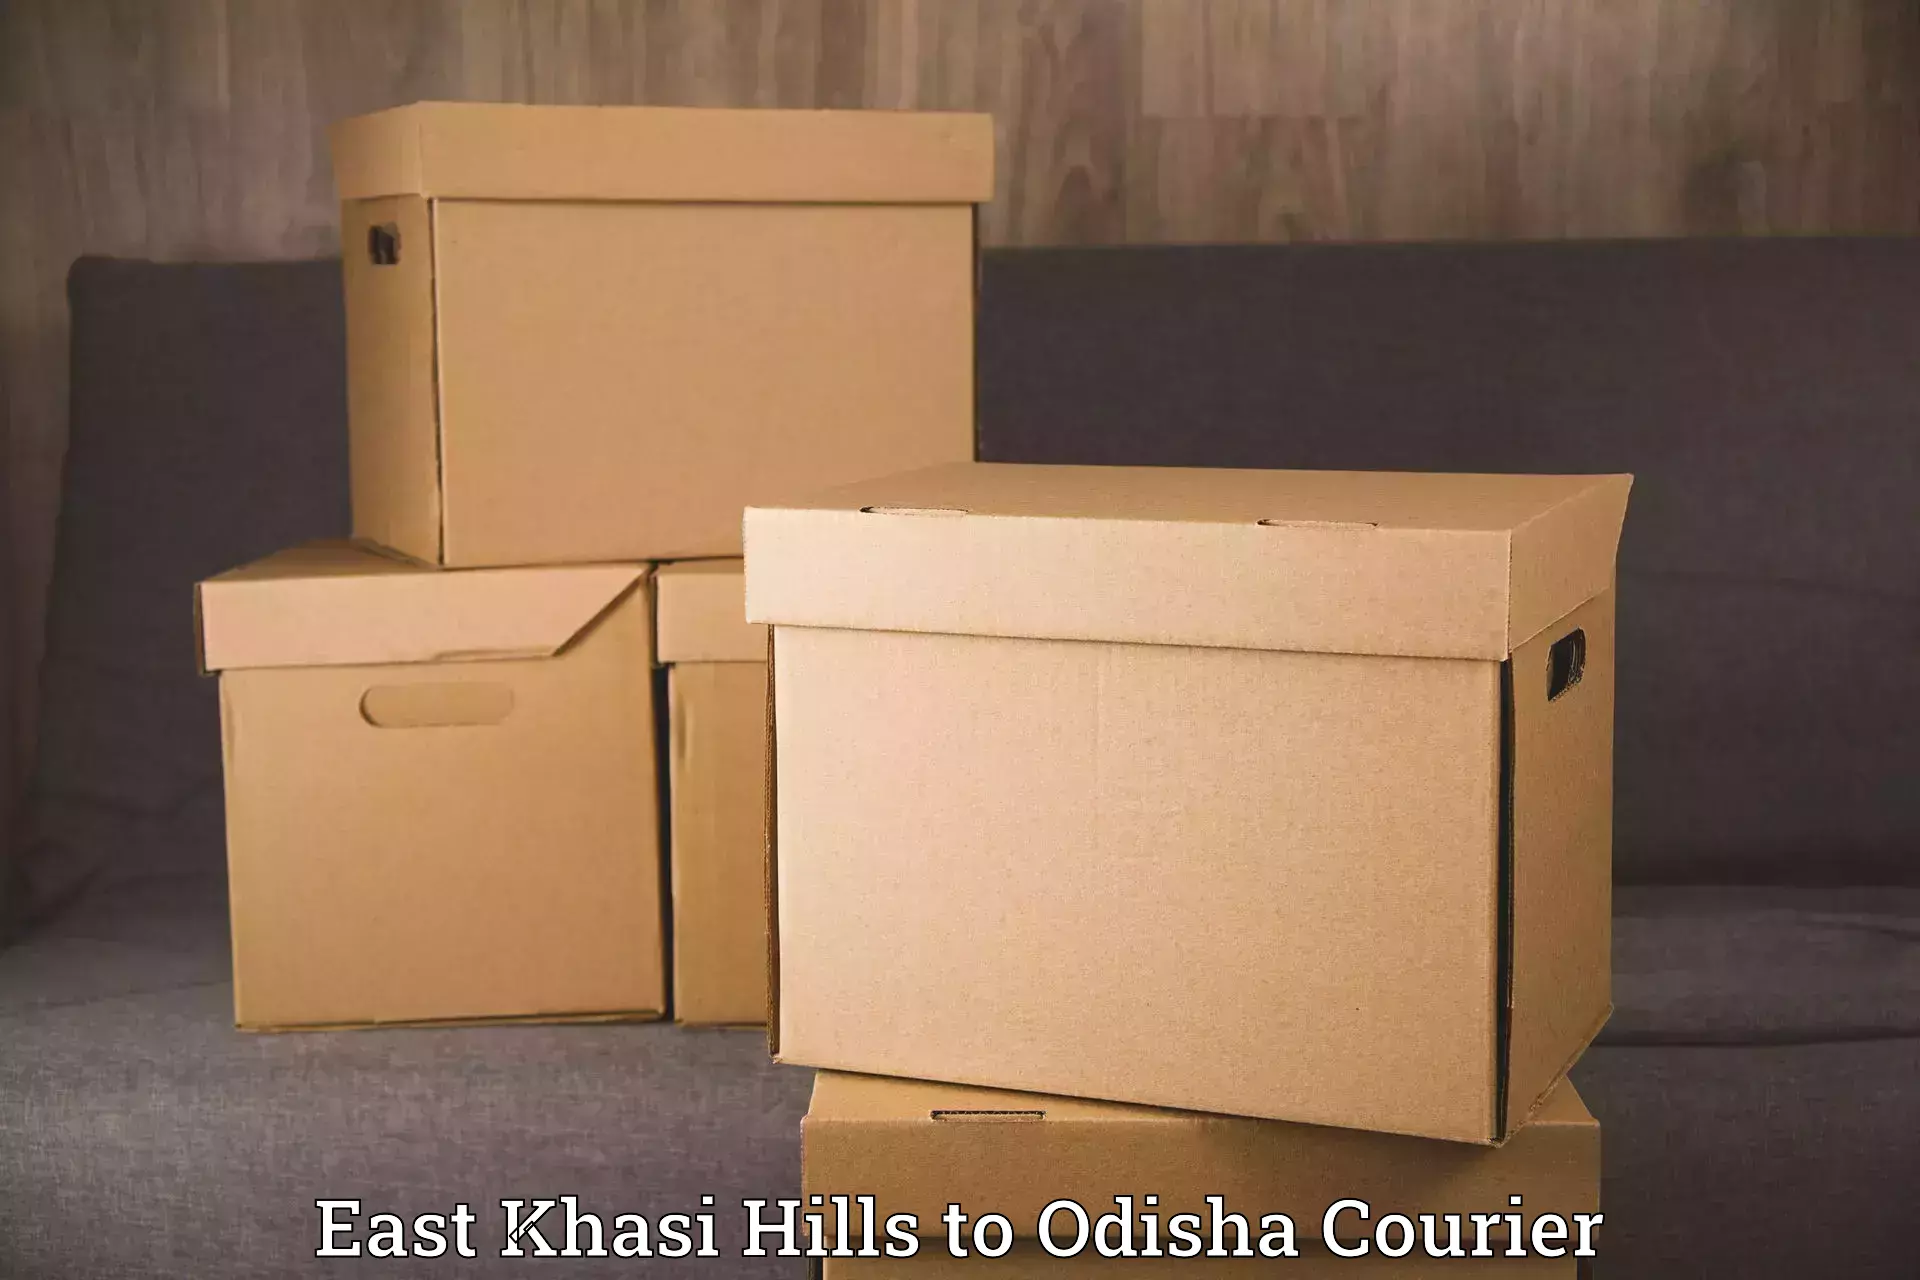 Comprehensive relocation services East Khasi Hills to Ganjam